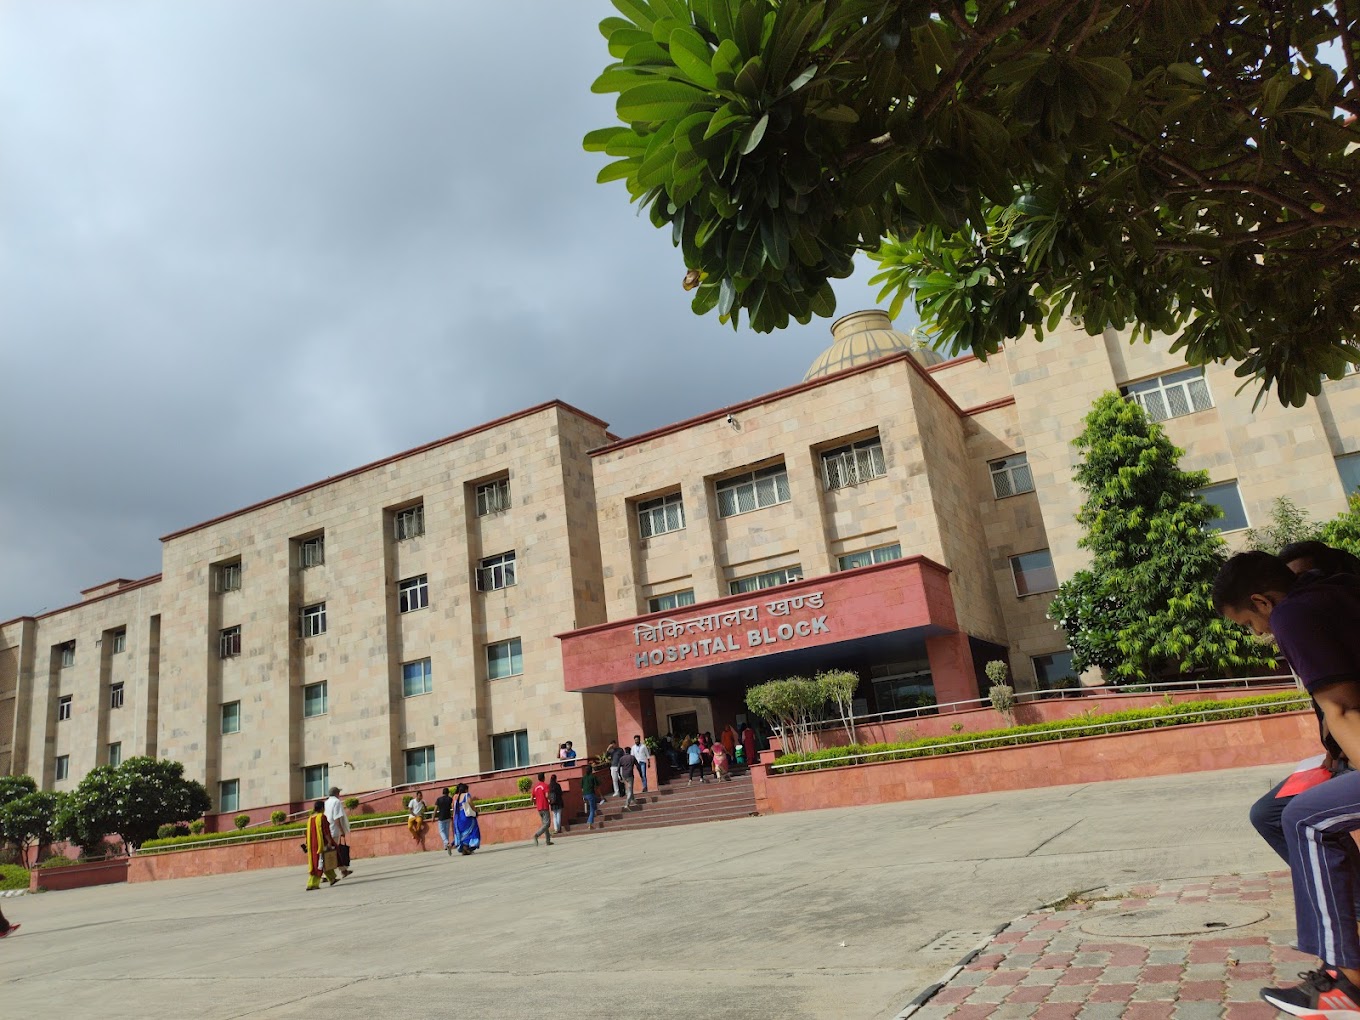 Chaudhary Brahm Prakash Ayurved Charak Sansthan Ayurvedic Hospital – Najafgarh